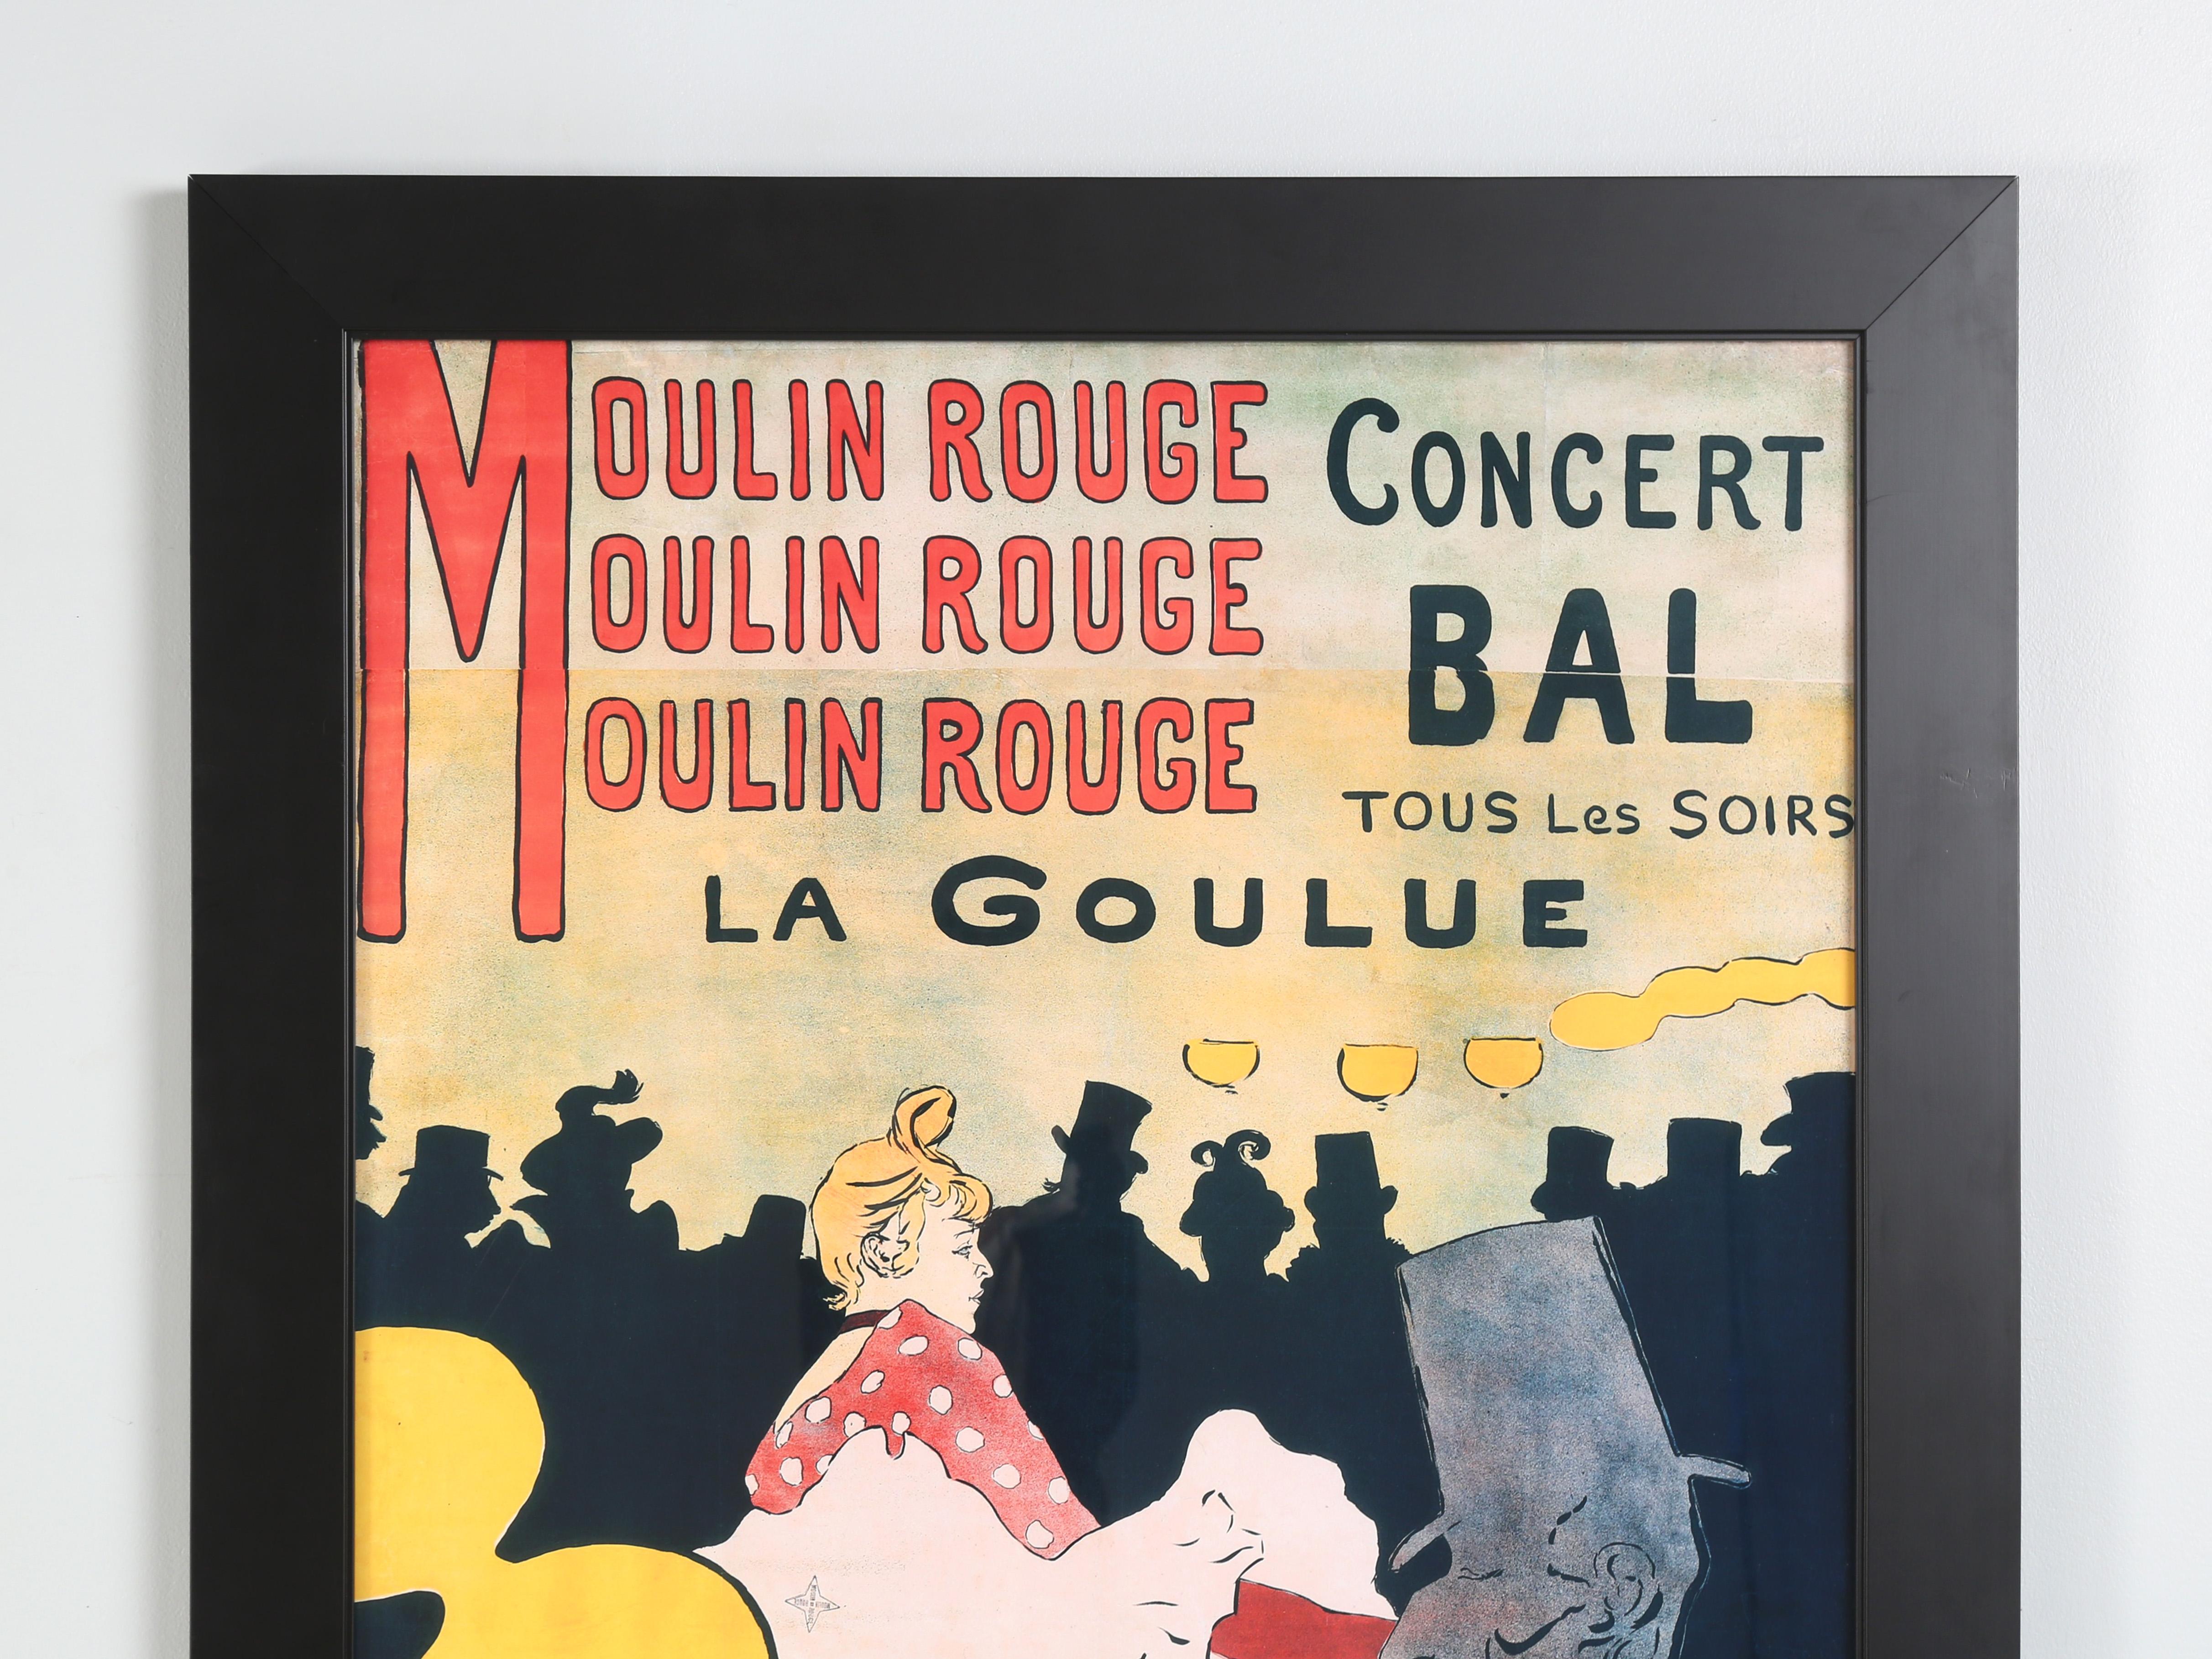 Französisches Plakat des Moulin Rouge Konzertballs von Henri de Toulouse-Lautrec. Großformatig und schön gerahmt.
**Bitte beachten Sie die Unterseite des Rahmens ist gechipt. Außerdem gibt es überall Schrammen, Bild 3.